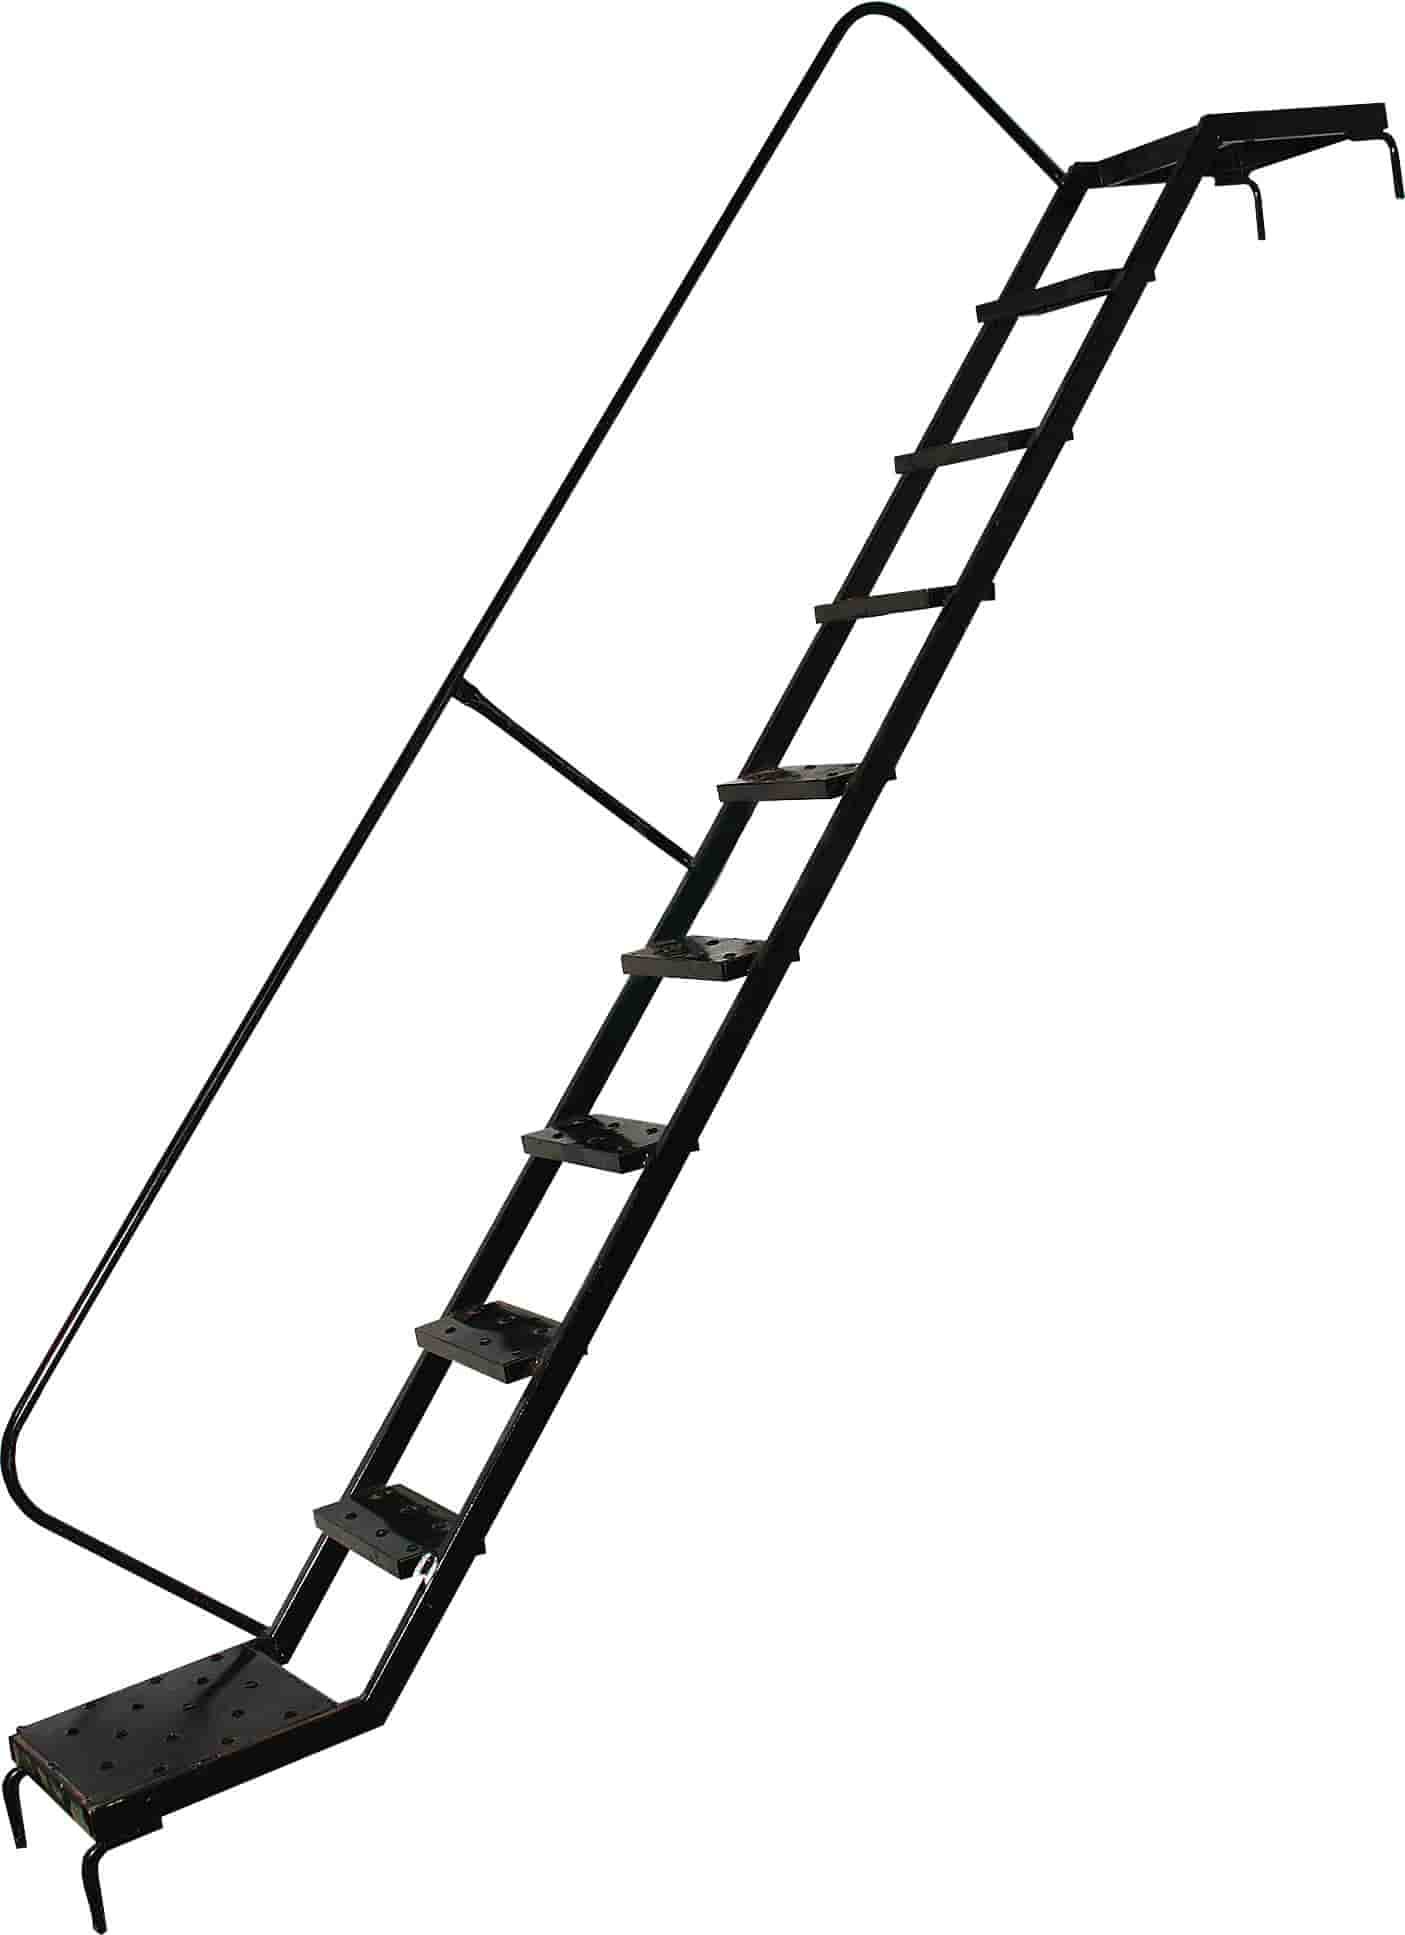 Дополнительное изображение ВТК-1 рабочая высота 8,7 м, размер площадки (1x2 м)